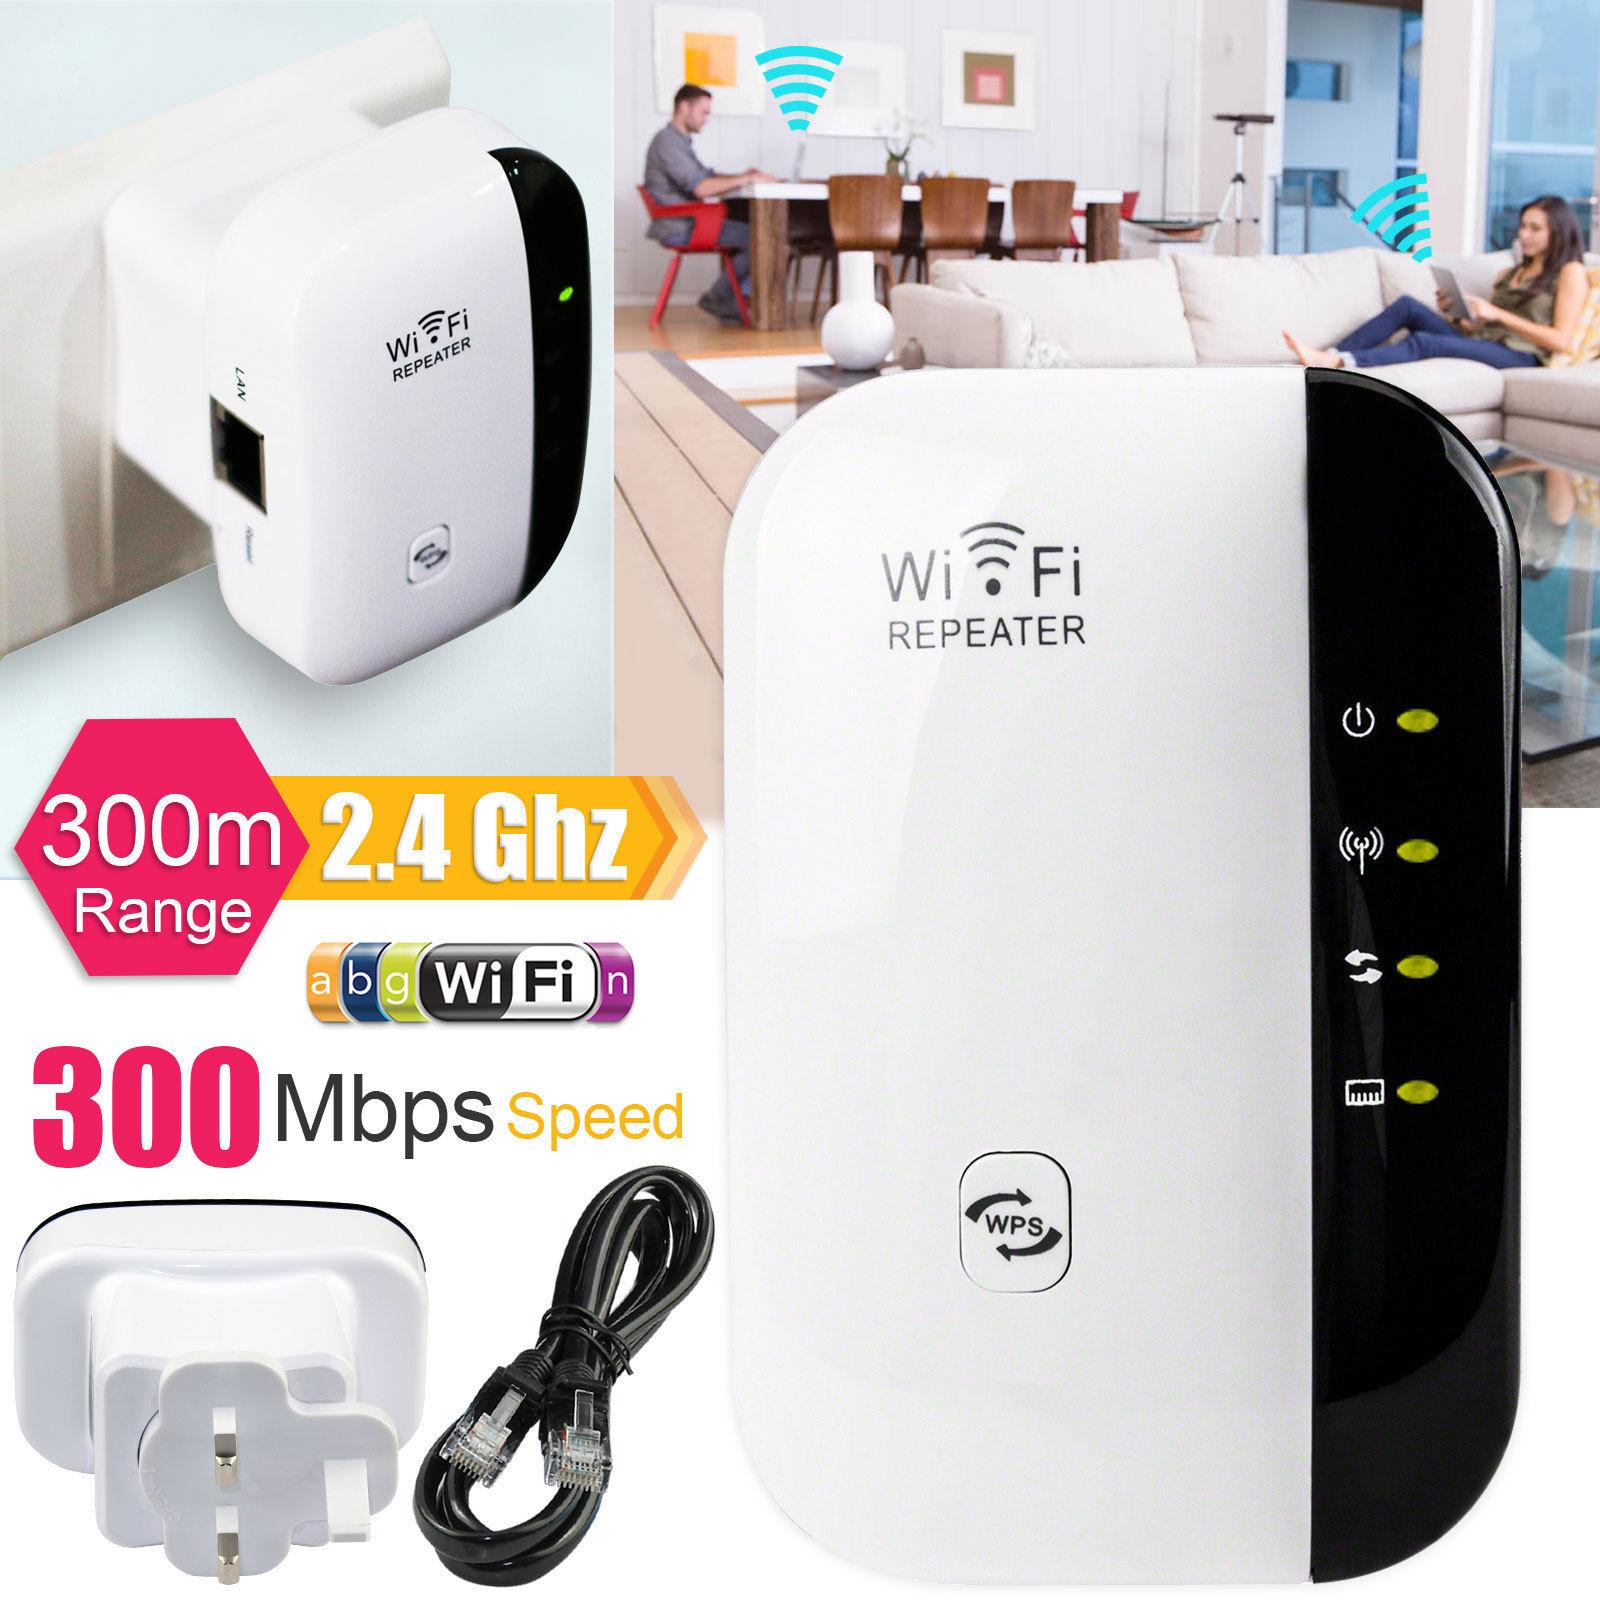 300Mbps-Wireless-WiFi-Range-Router-Repeater-Extender-N.jpg